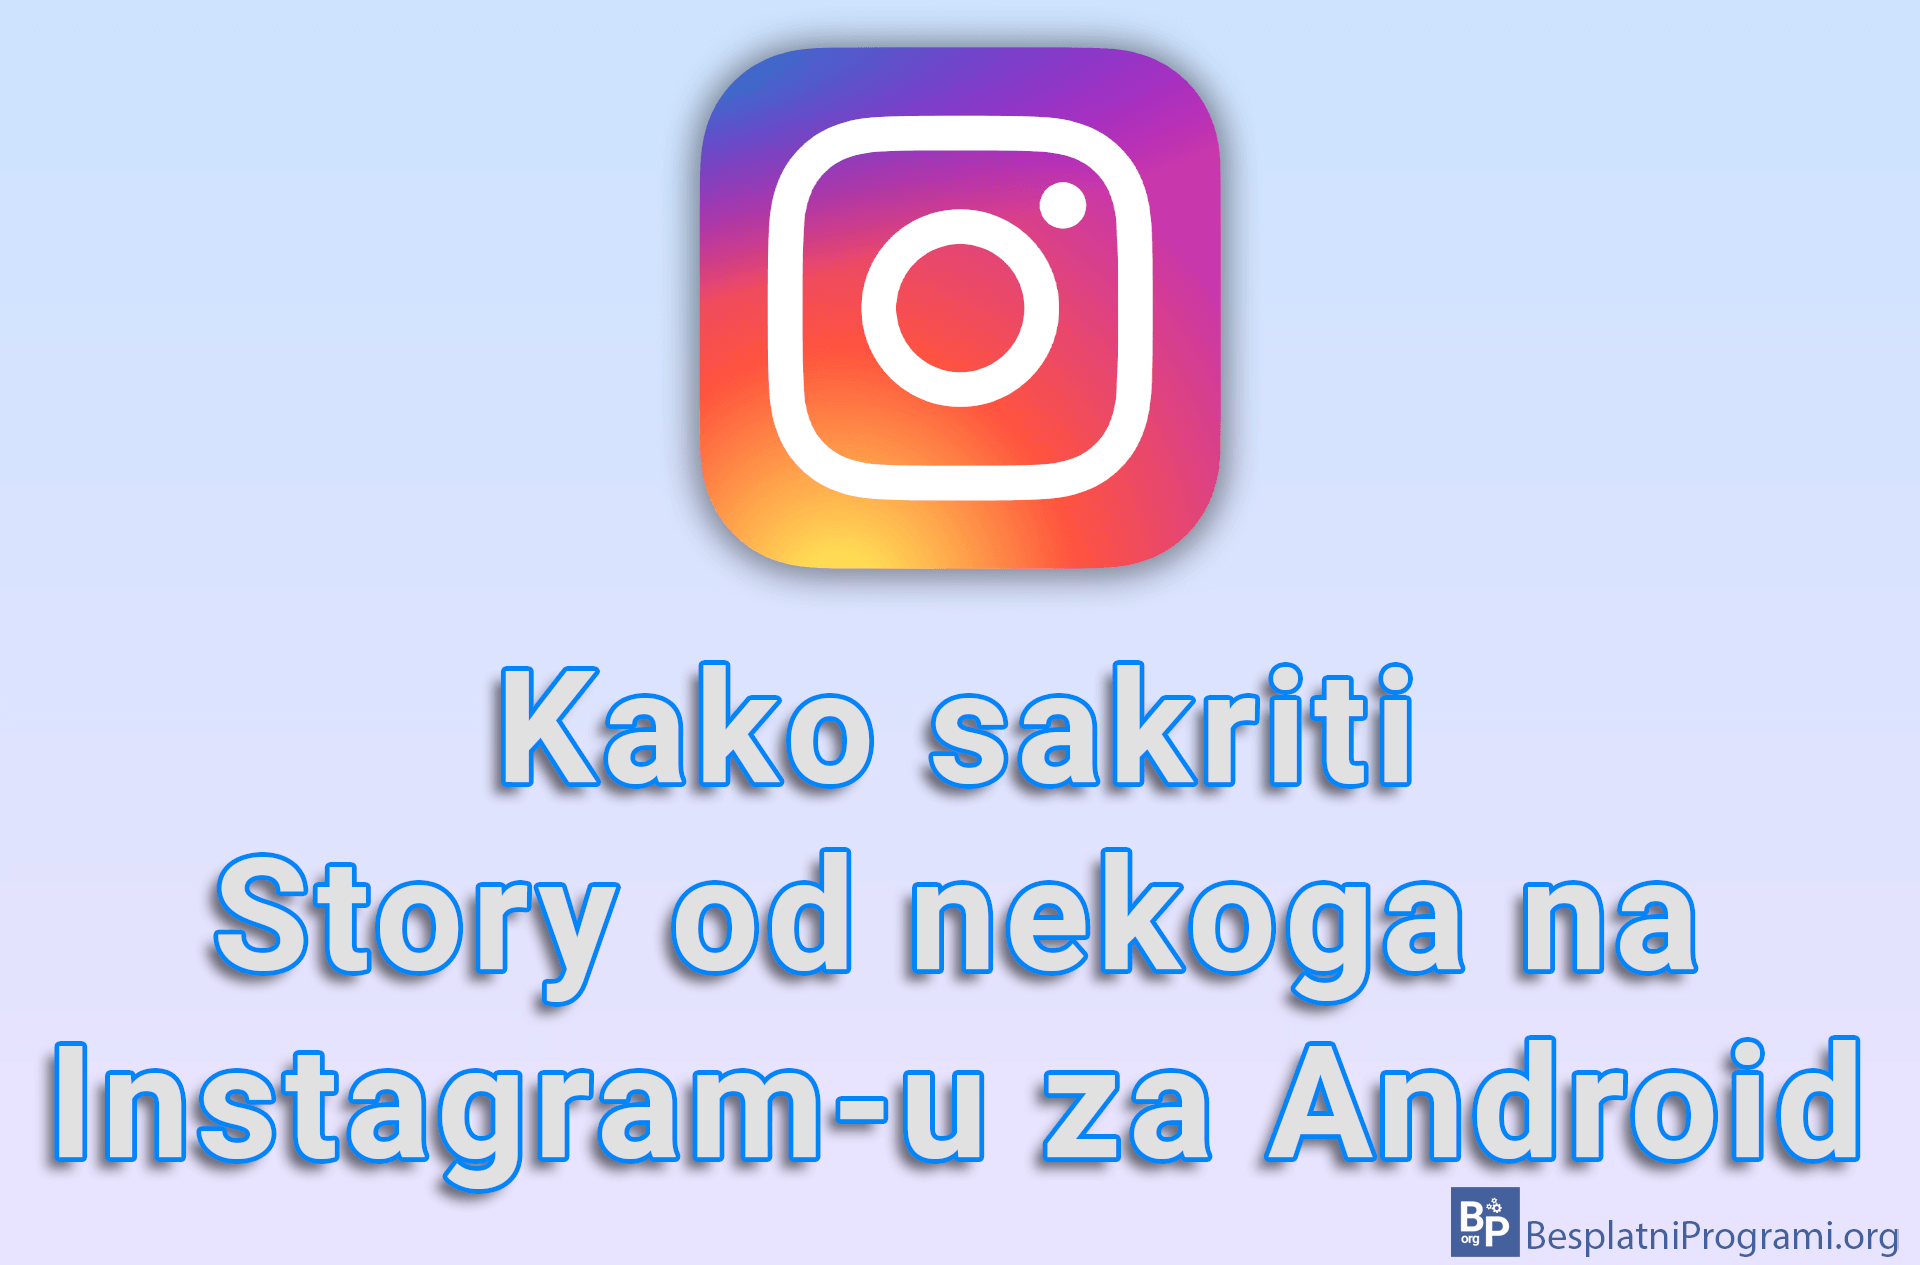 Kako sakriti Story od nekoga na Instagram-u za Android